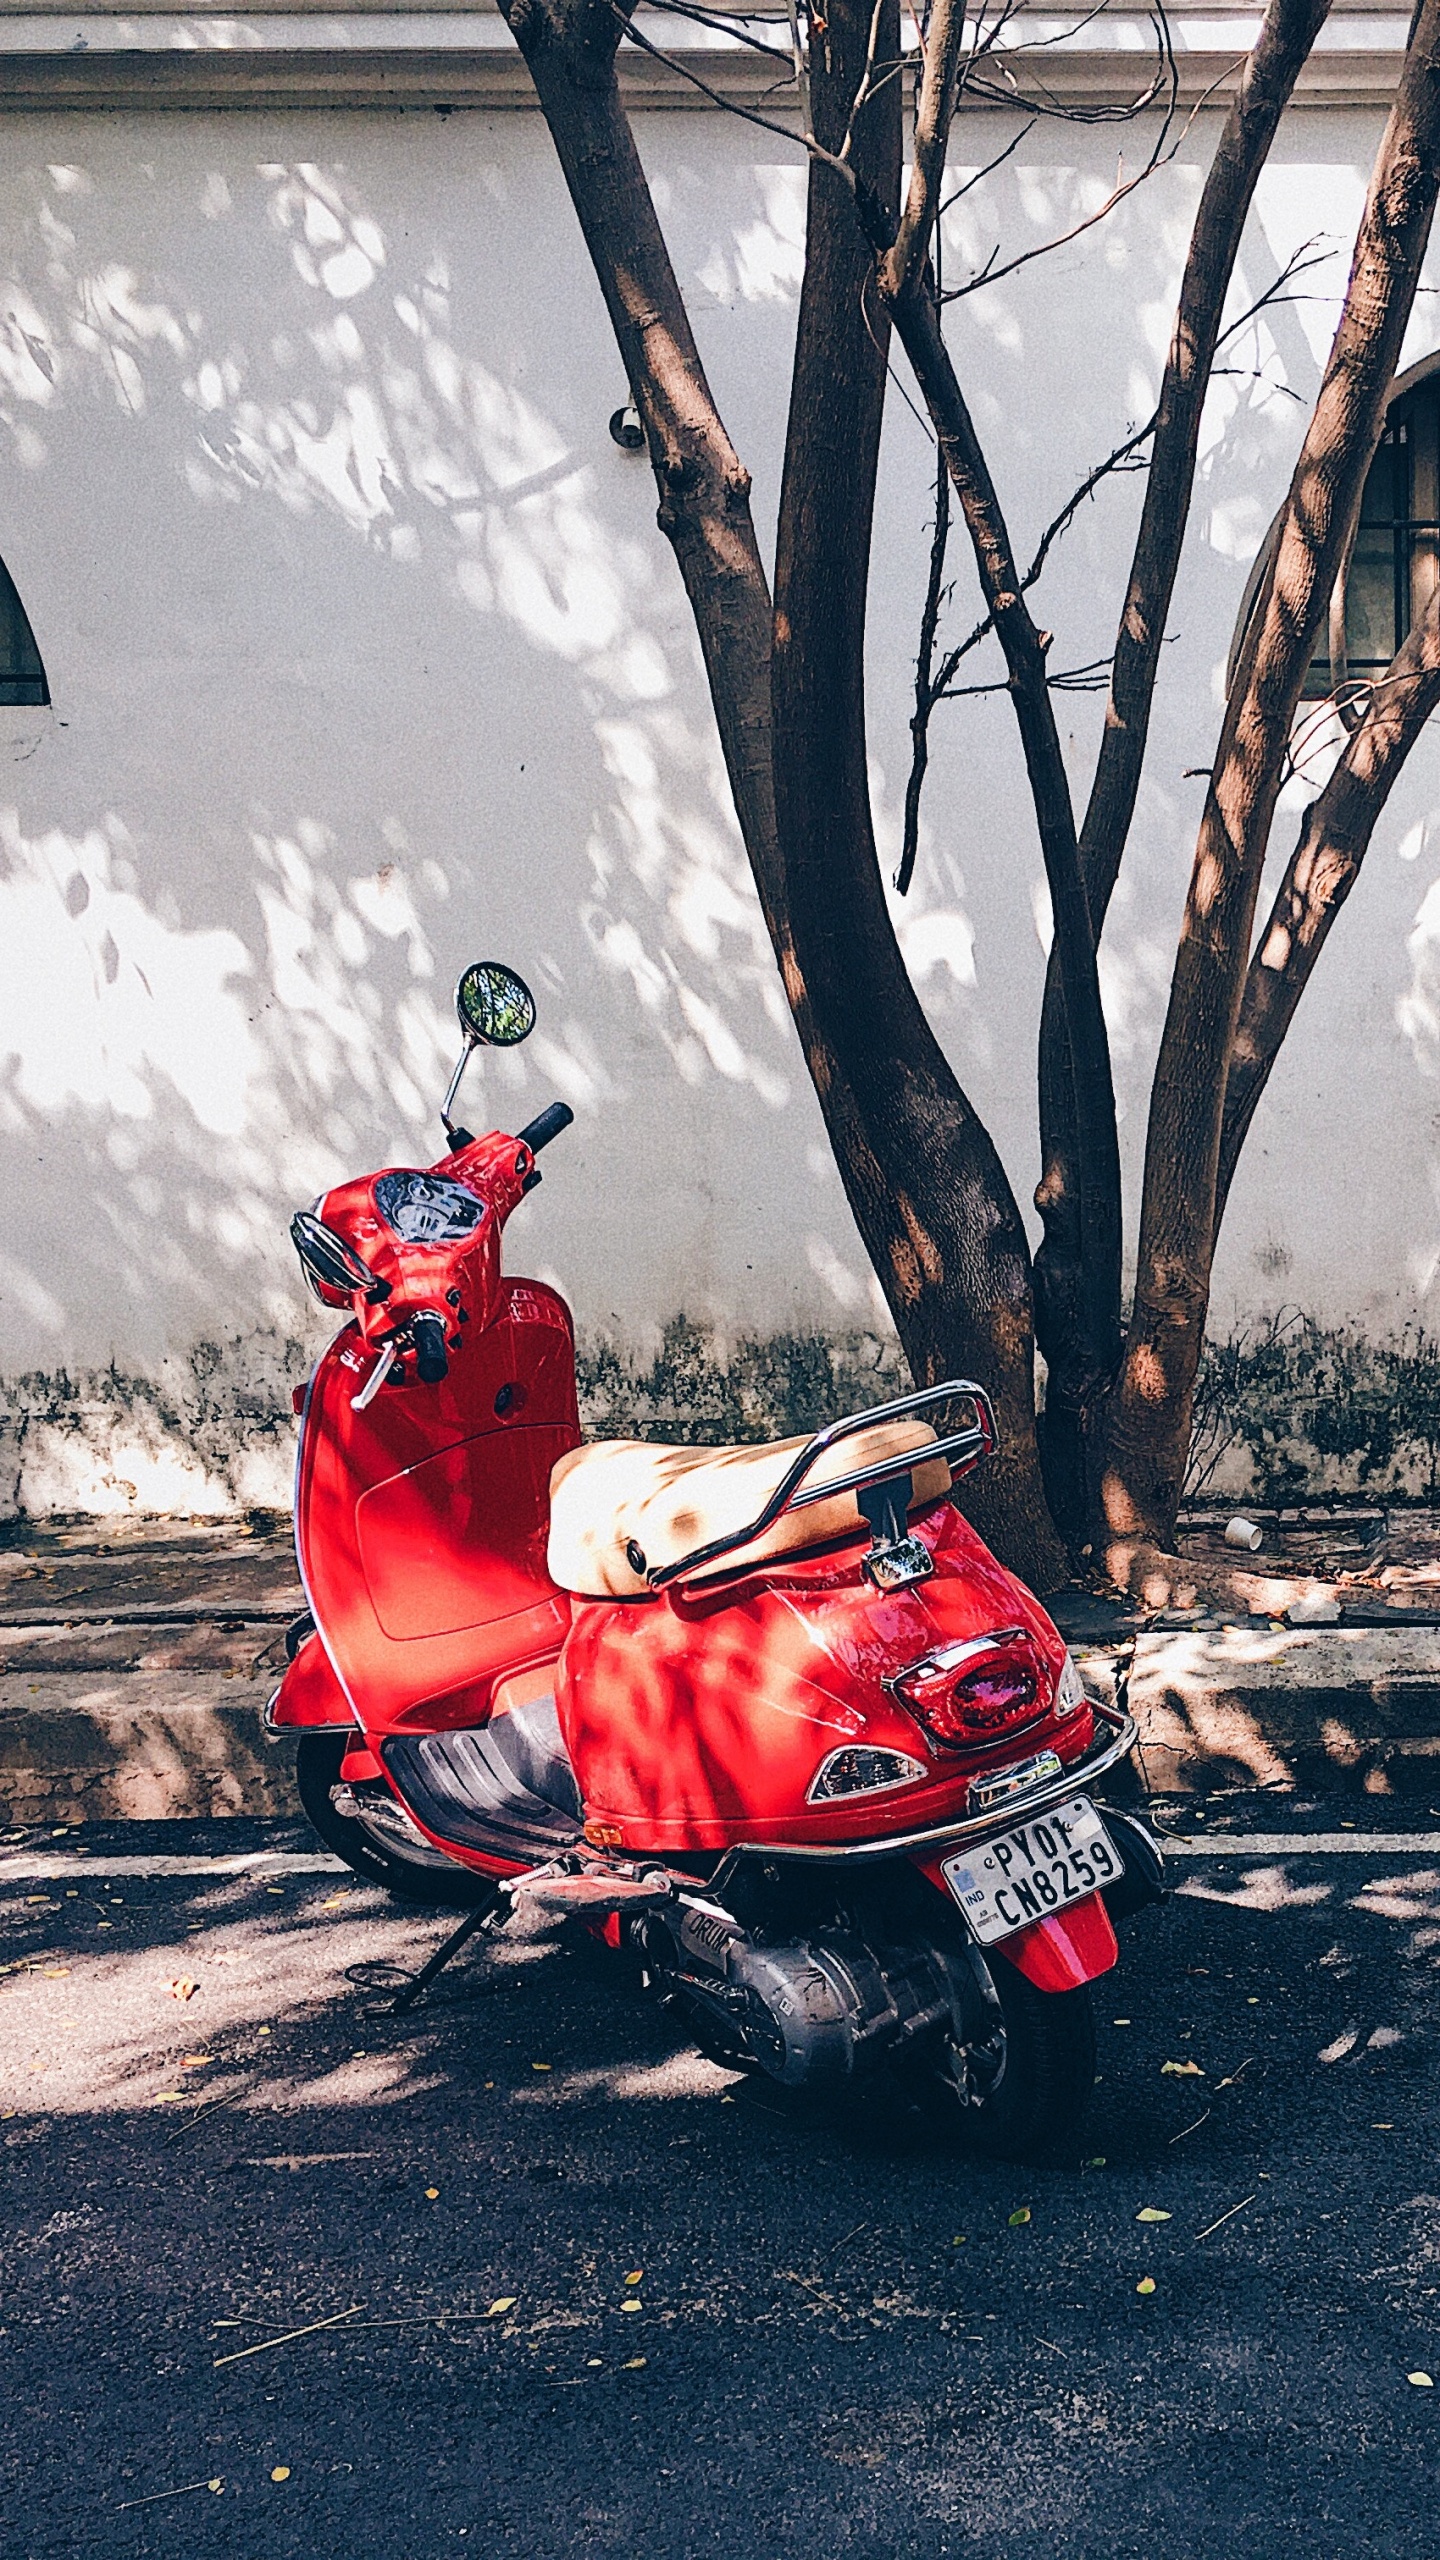 Hombre de Chaqueta Roja Montando Moto Roja en la Carretera Durante el Día. Wallpaper in 1440x2560 Resolution